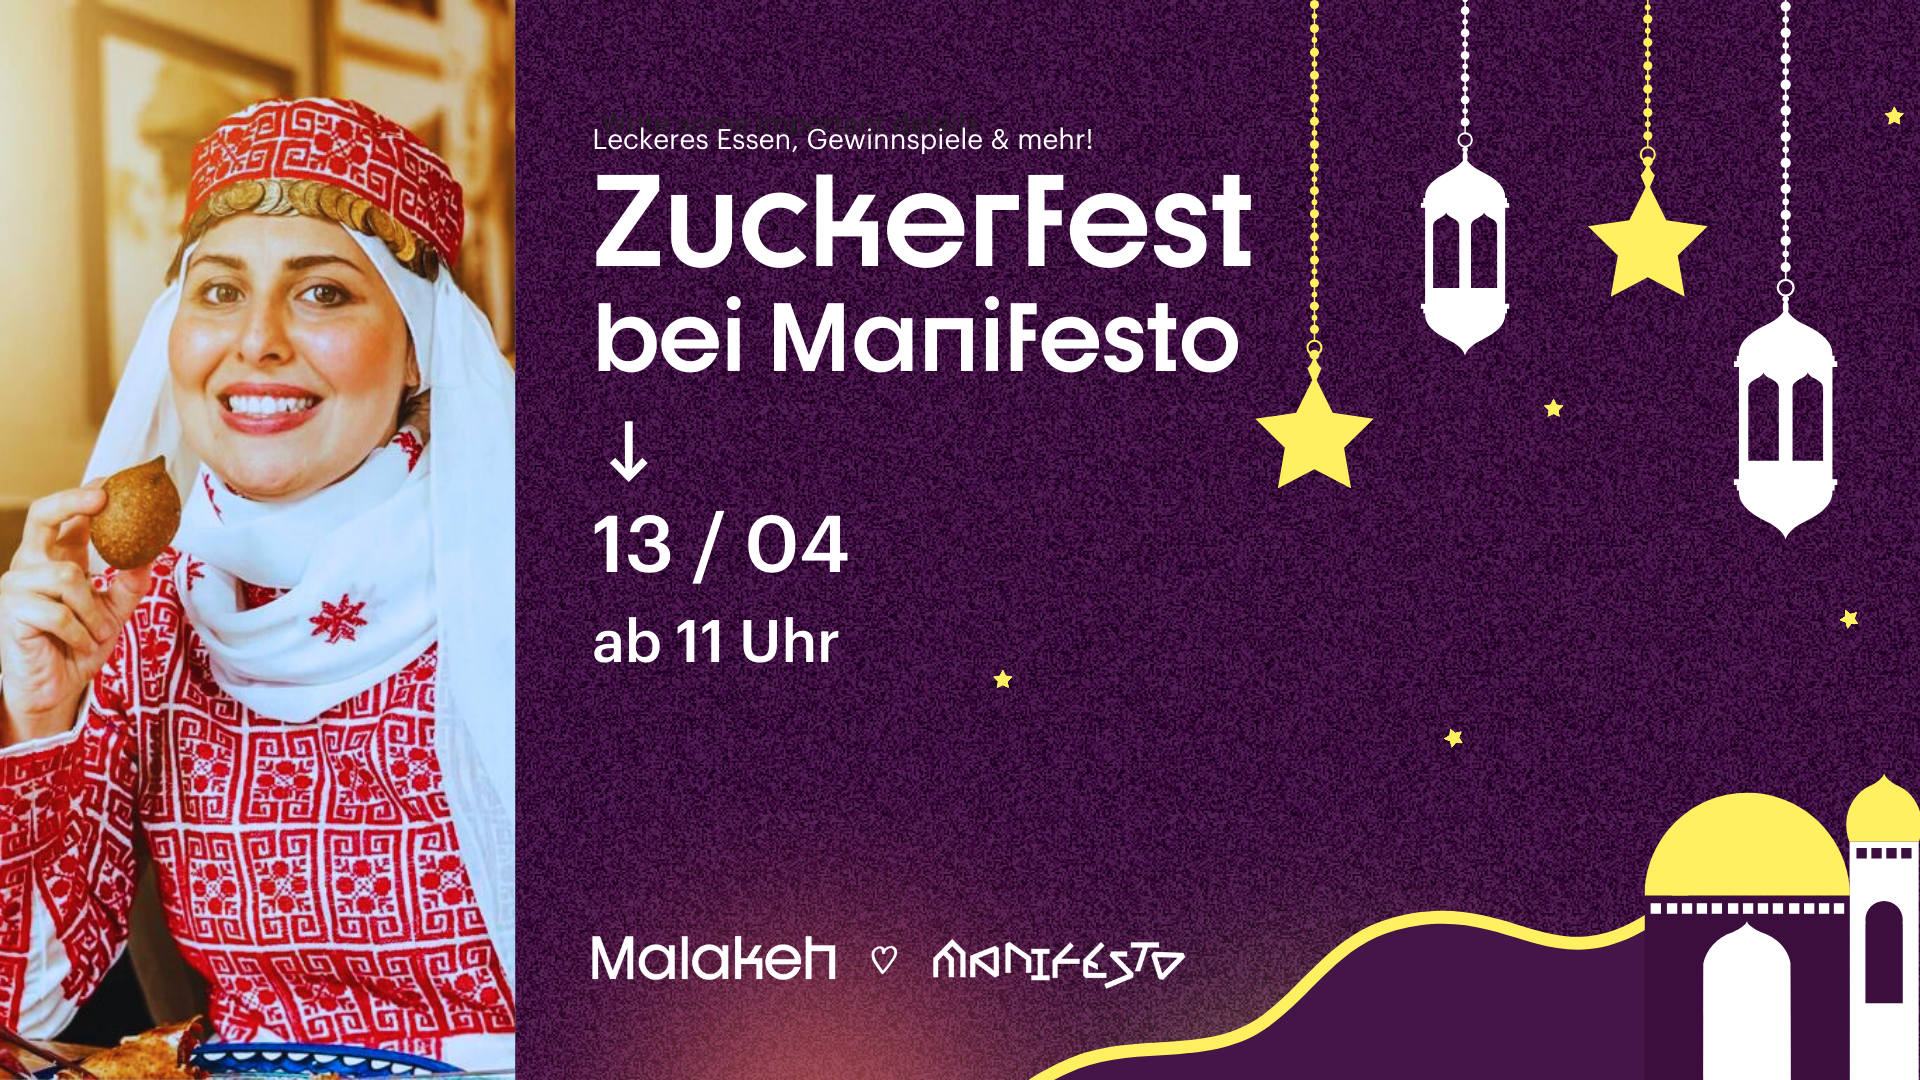 Zuckerfest bei Manifesto ⎮ Live-Musik, Gewinnspiele & mehr!, 13/04